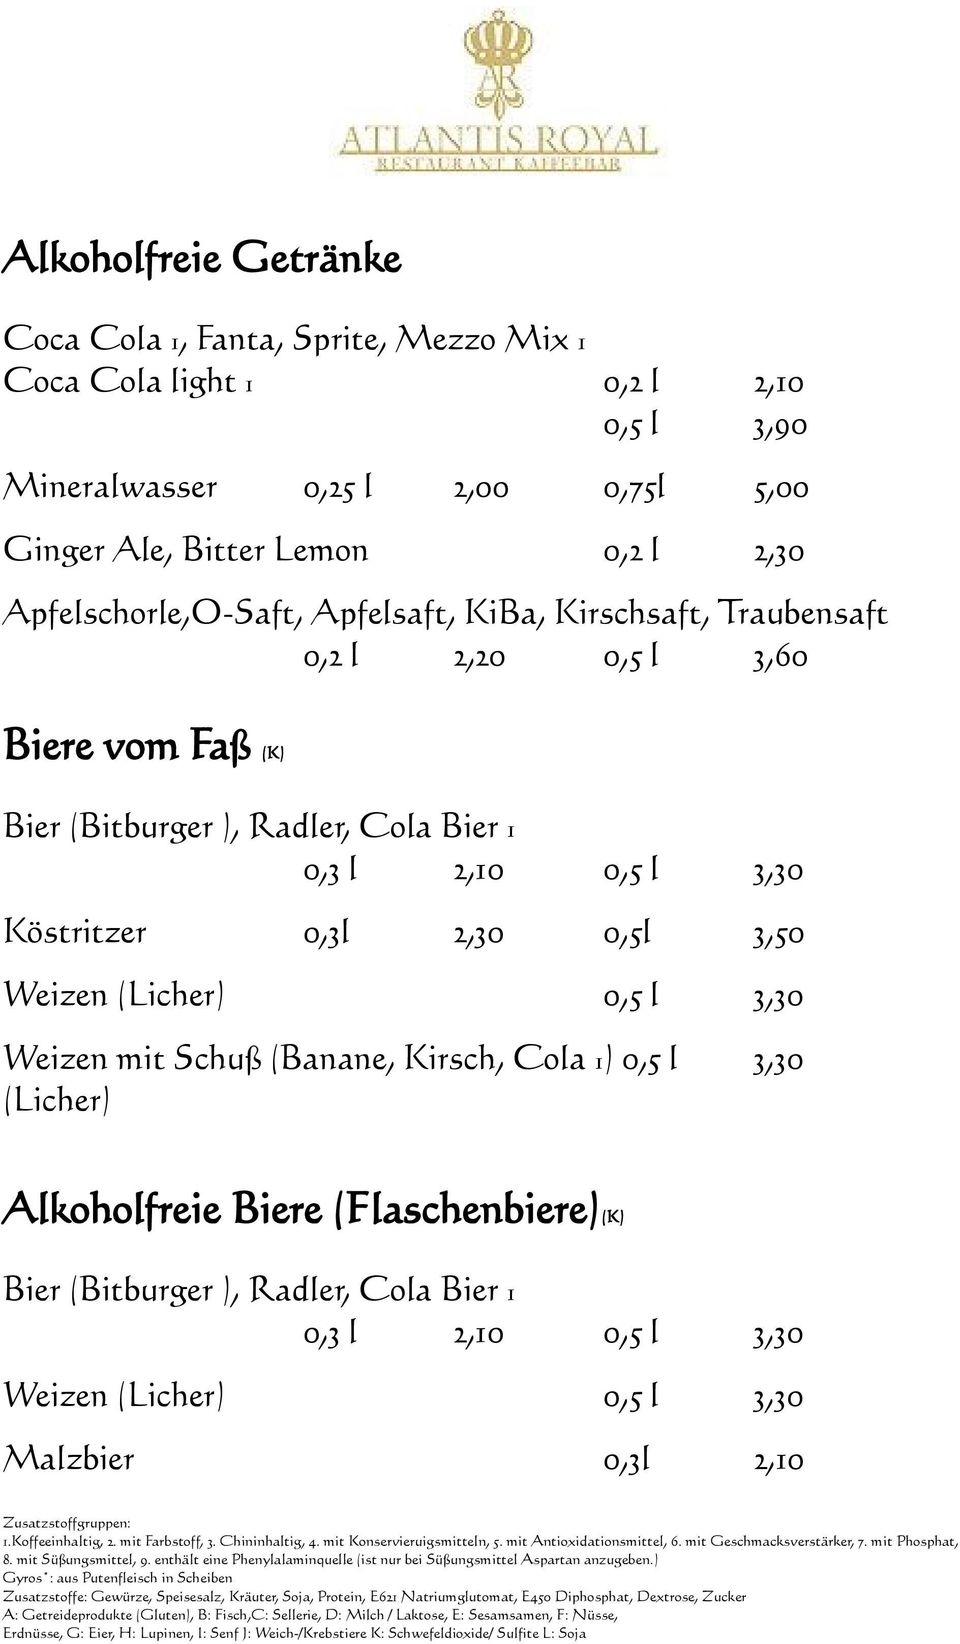 Radler, Cola Bier 1 0,3 l 2,10 0,5 l 3,30 Köstritzer 0,3l 2,30 0,5l 3,50 Weizen (Licher) 0,5 l 3,30 Weizen mit Schuß (Banane, Kirsch, Cola 1) 0,5 l